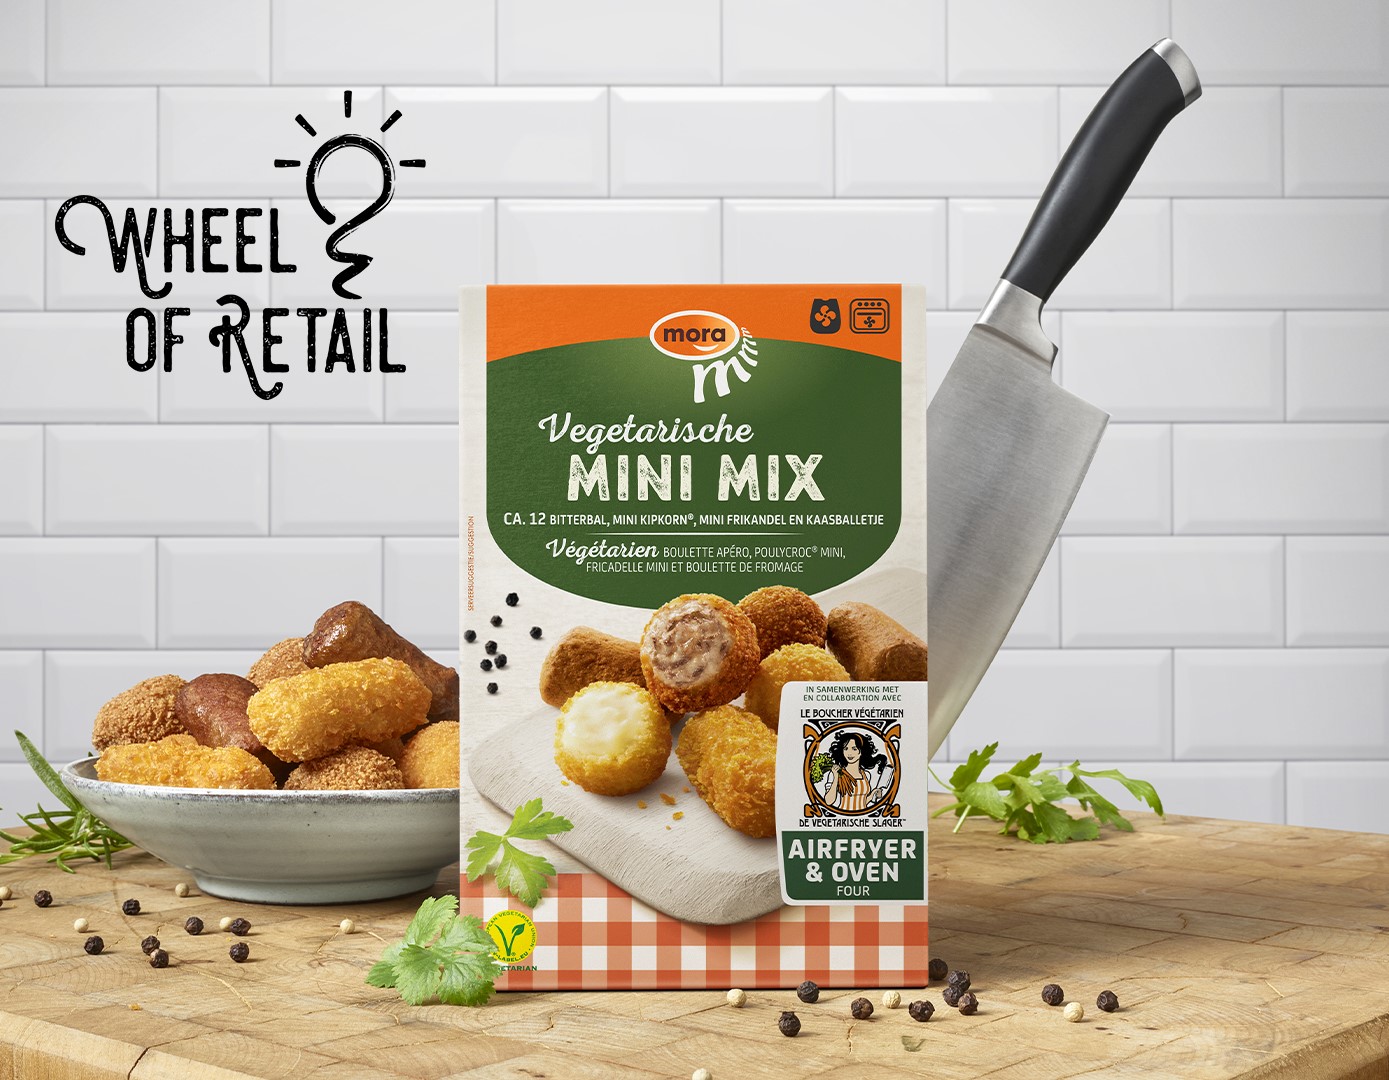 Mora Vegetarische Mini Mix wint Wheel of Retail ‘Beste introductie diepvries snacks’